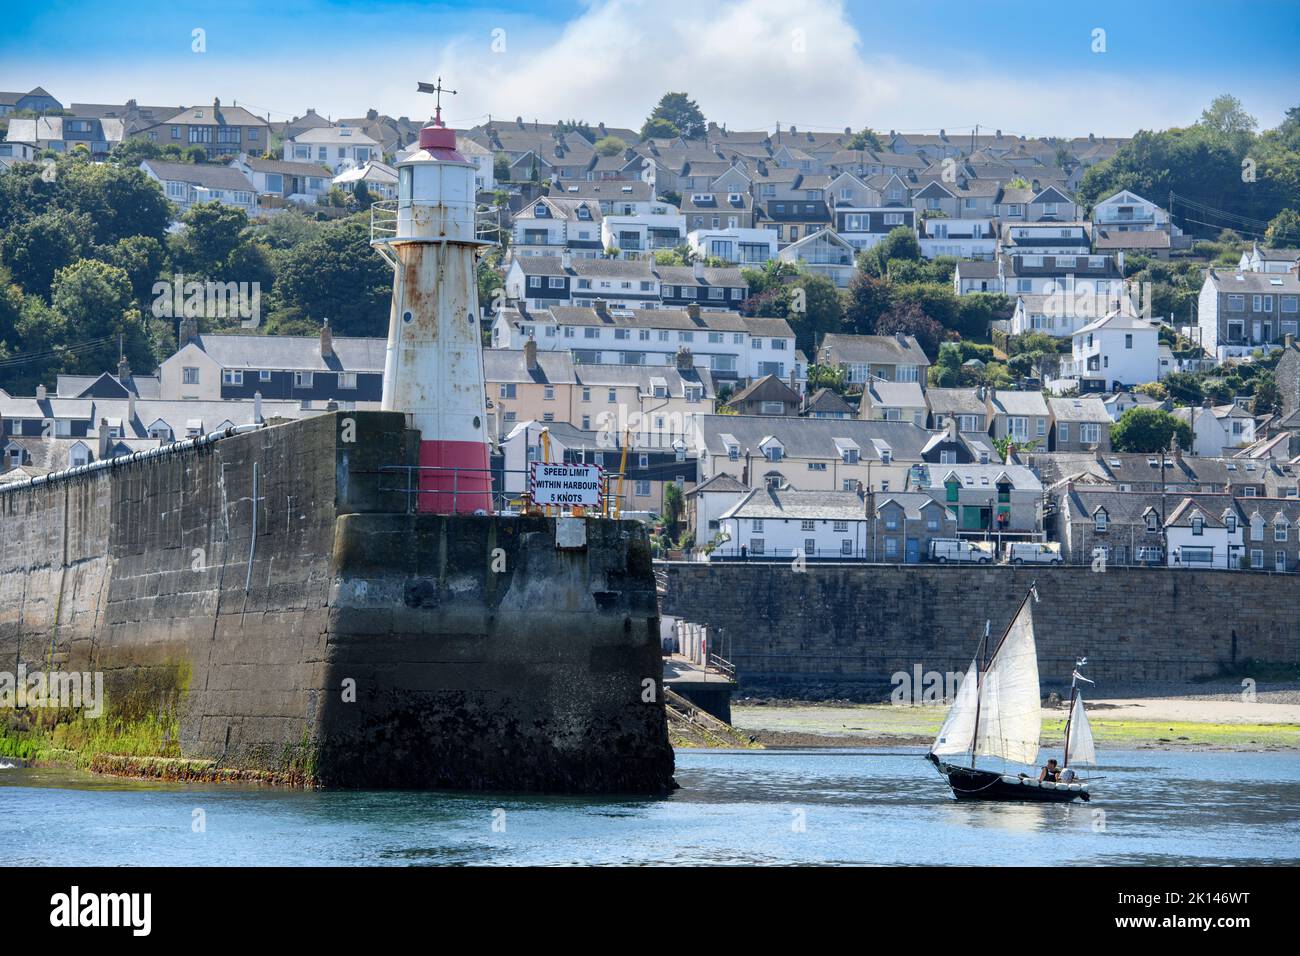 Un bateau à voile quitte le port de Newlyn à Cornwall, au Royaume-Uni - le niveau moyen de la mer à Newlyn, Ordnance Datum Newlyn fournit la référence verticale de l'Ordnance su Banque D'Images